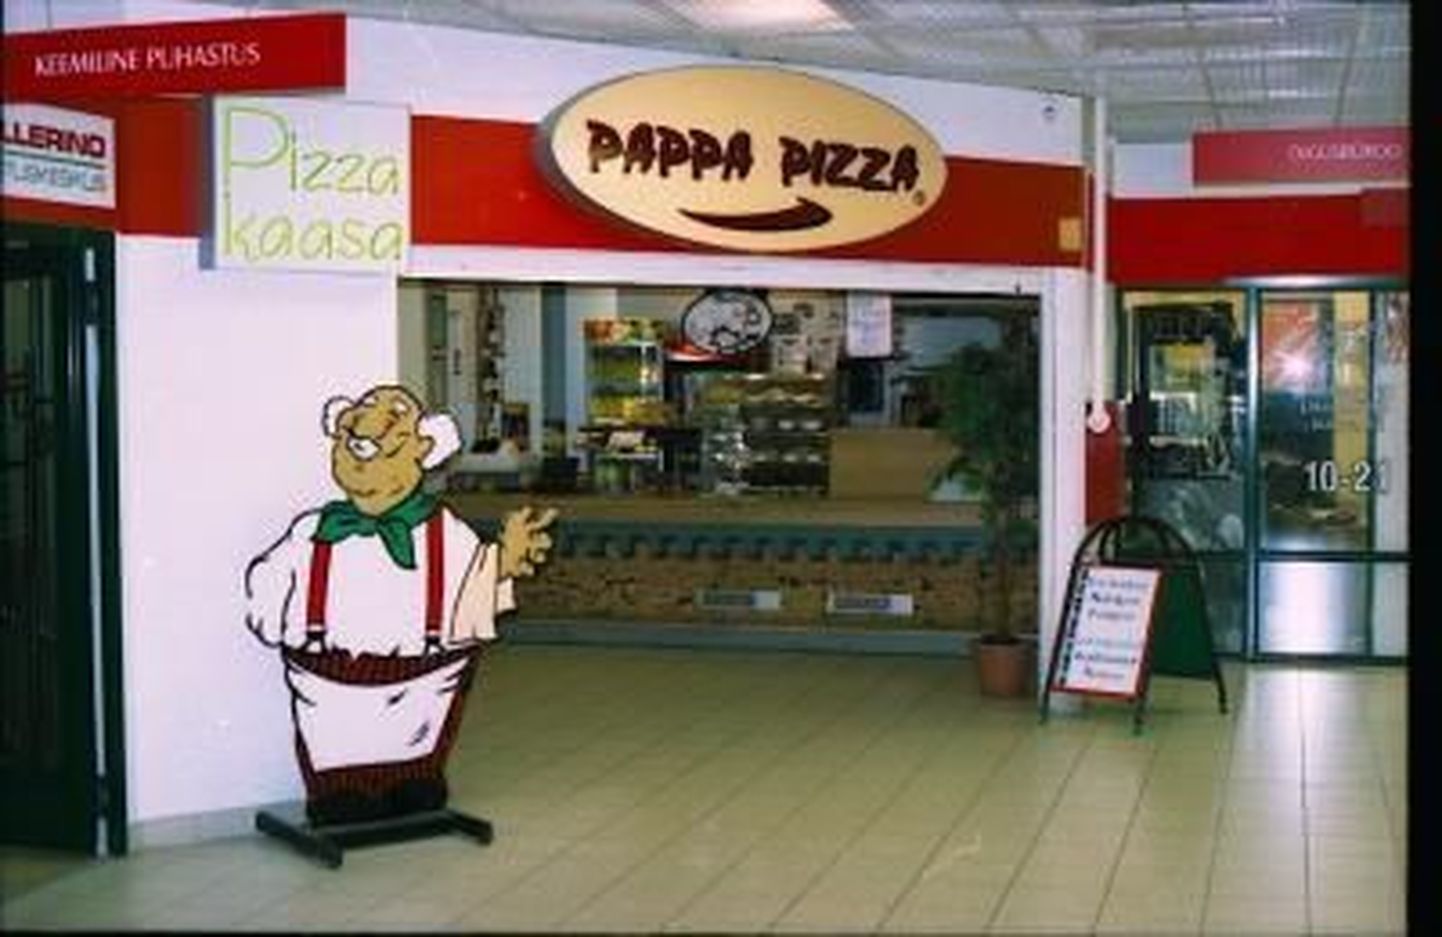 Pappa Pizza Kadaka